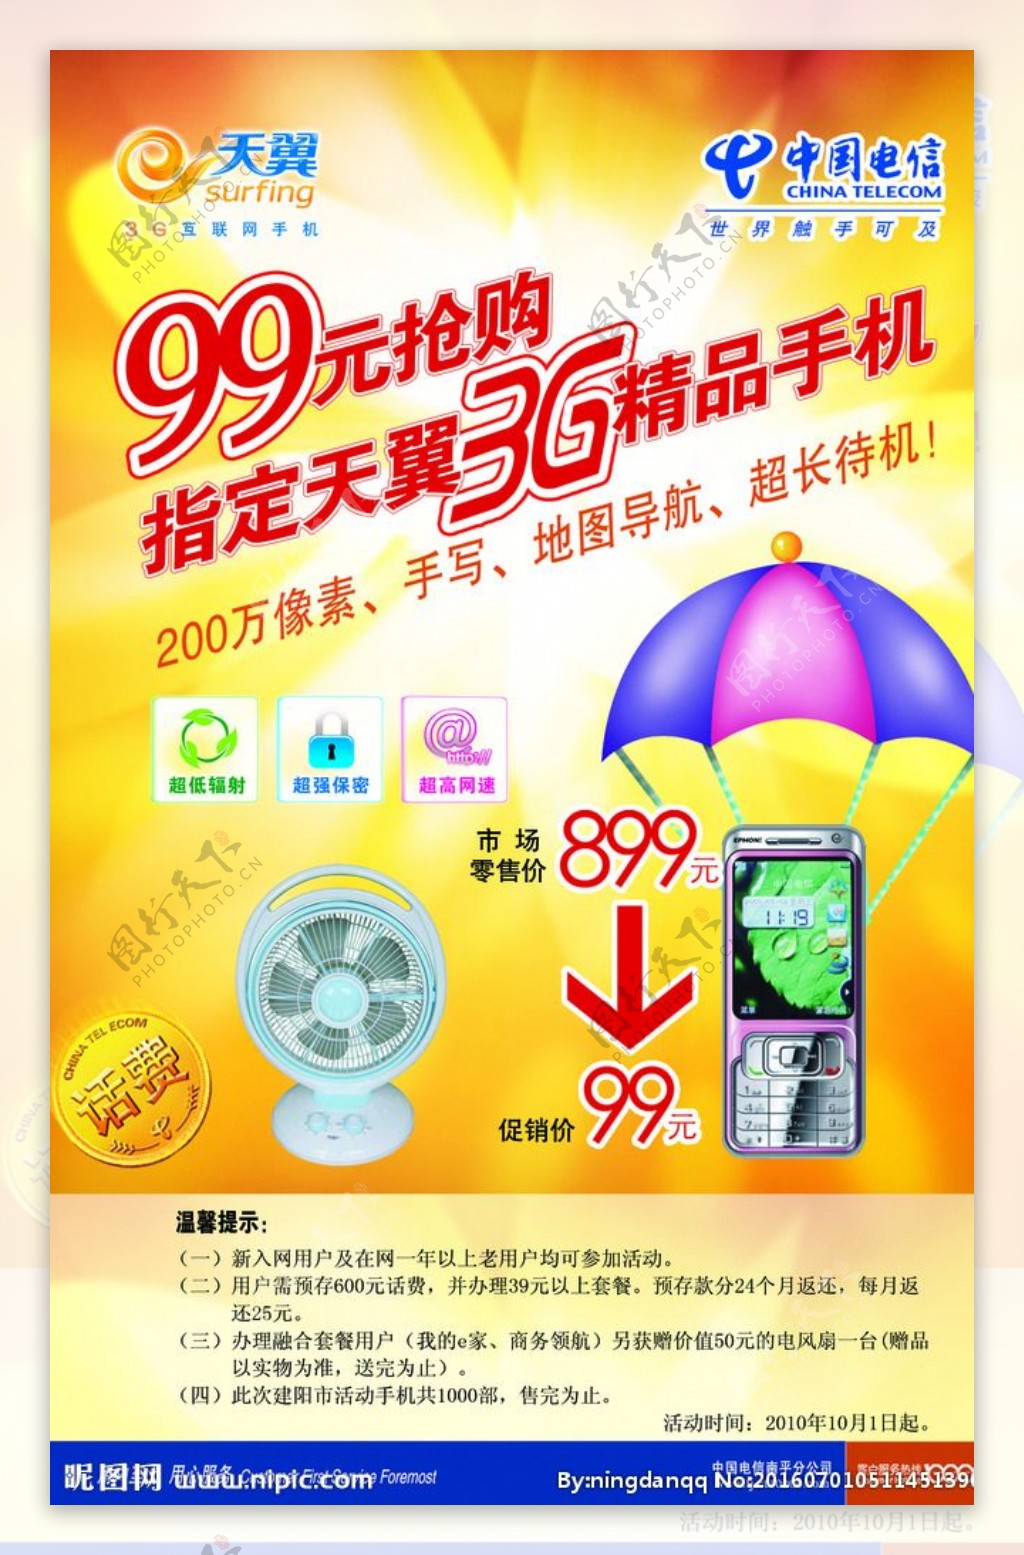 99元购3g手机